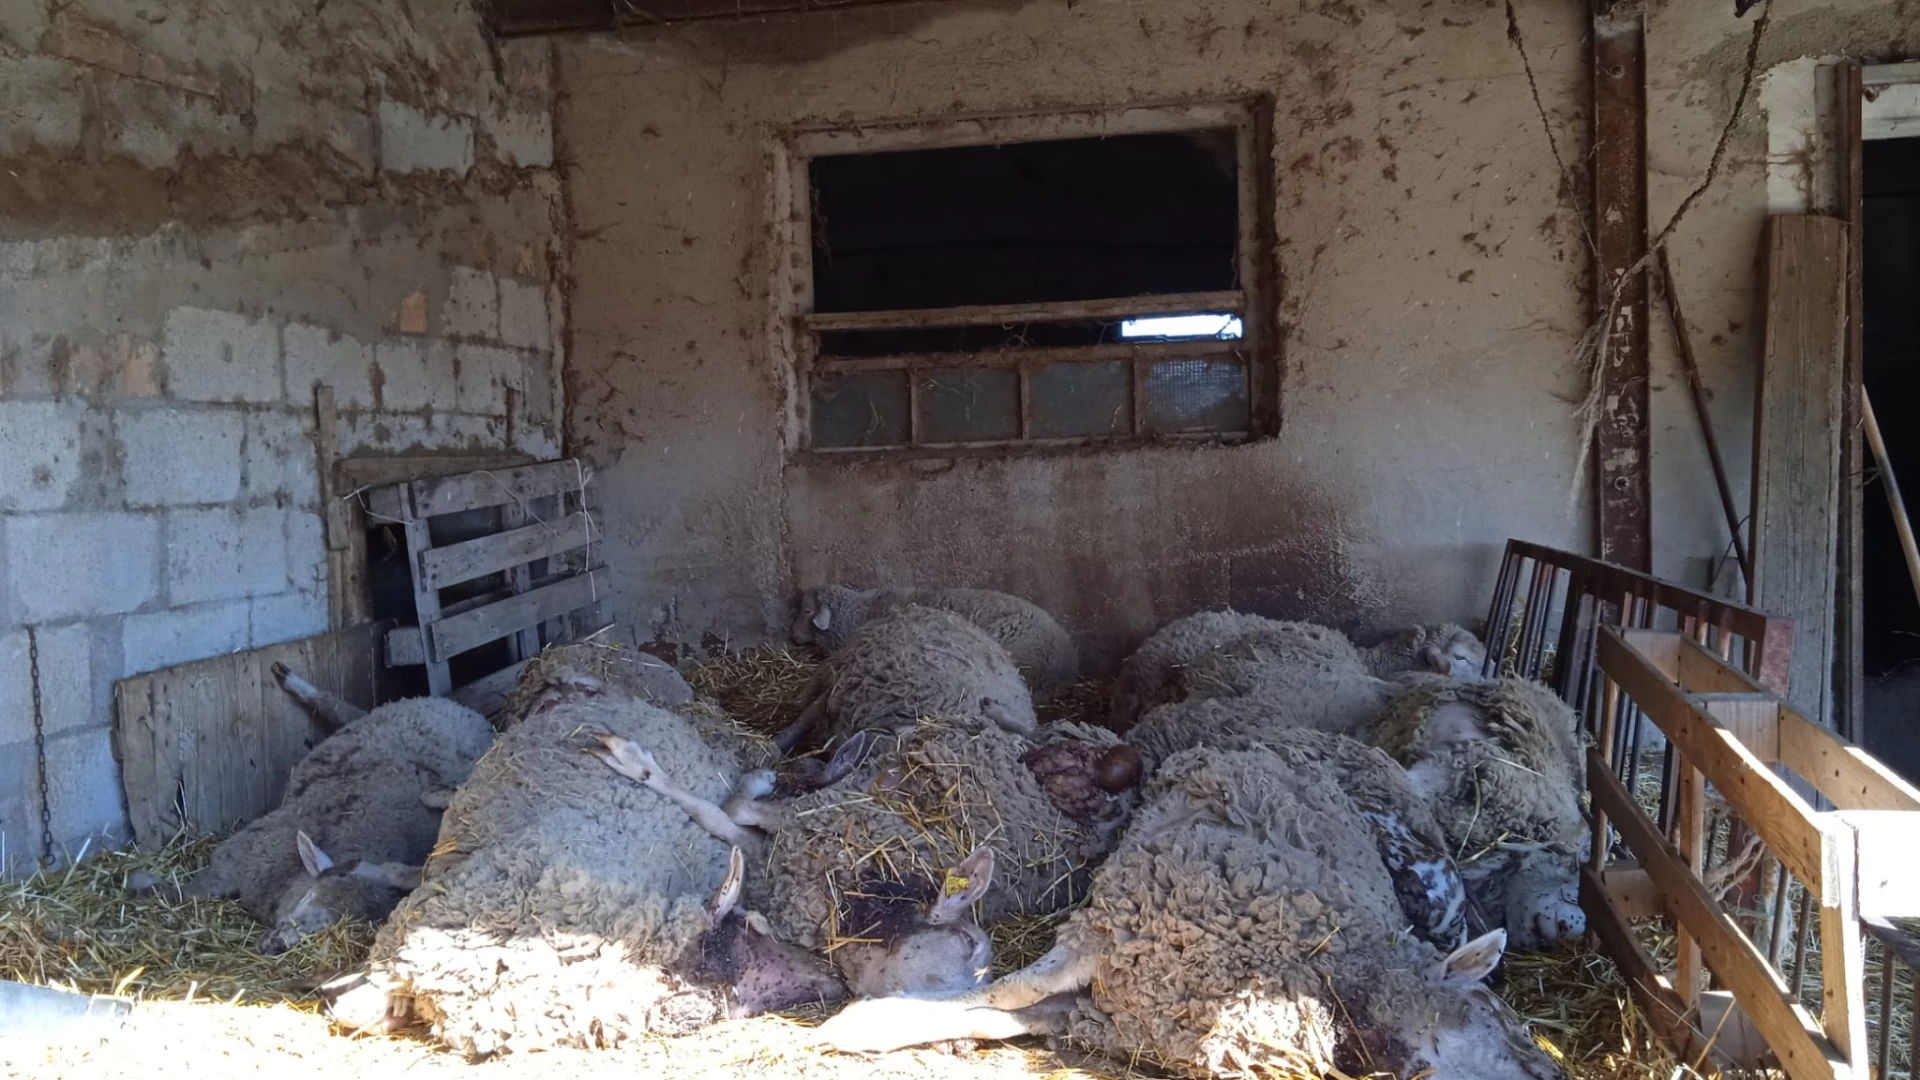 Fauna selvatica, Coldiretti Molise: “Lupo ok ora salviamo anche le pecore”. Anche in regione cresce il numero degli avvistamenti e delle aggressioni al bestiame.